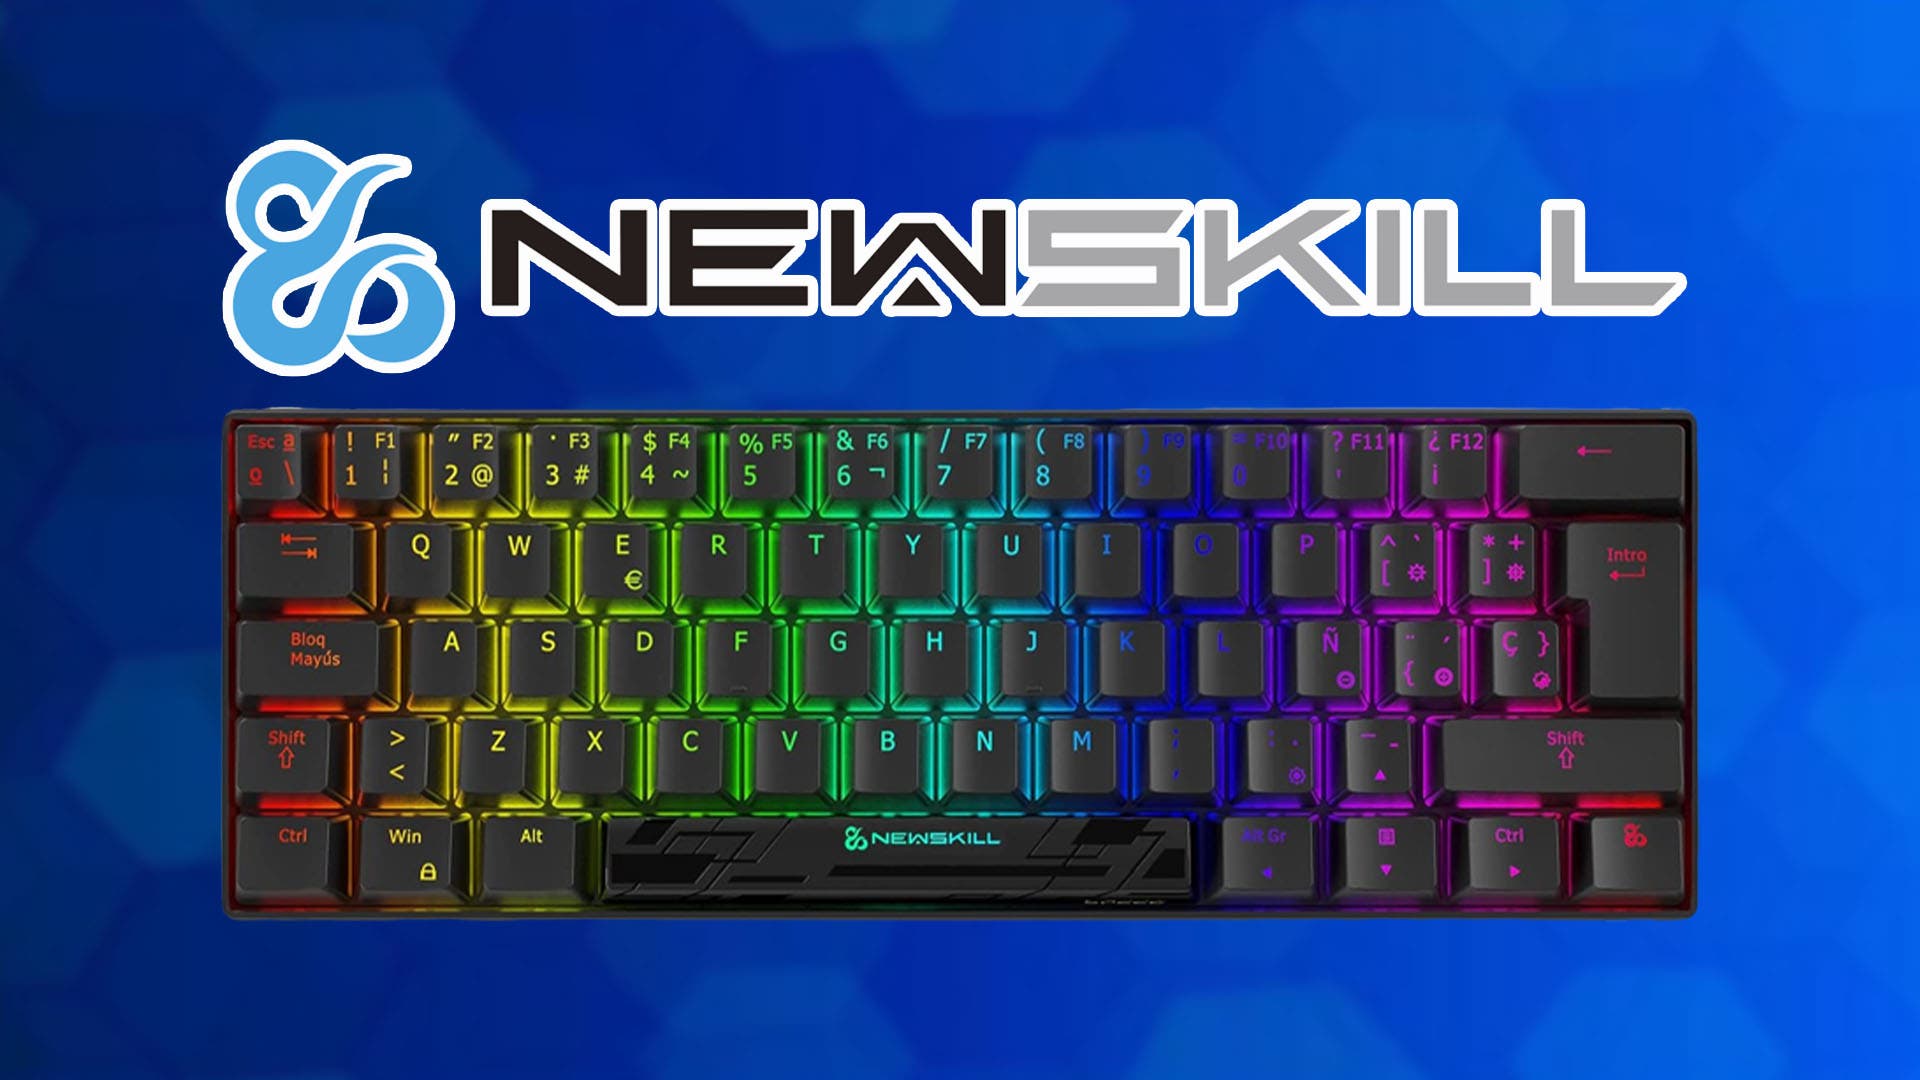 Descuento del 38% en el teclado Newskill inalámbrico Speed Pro